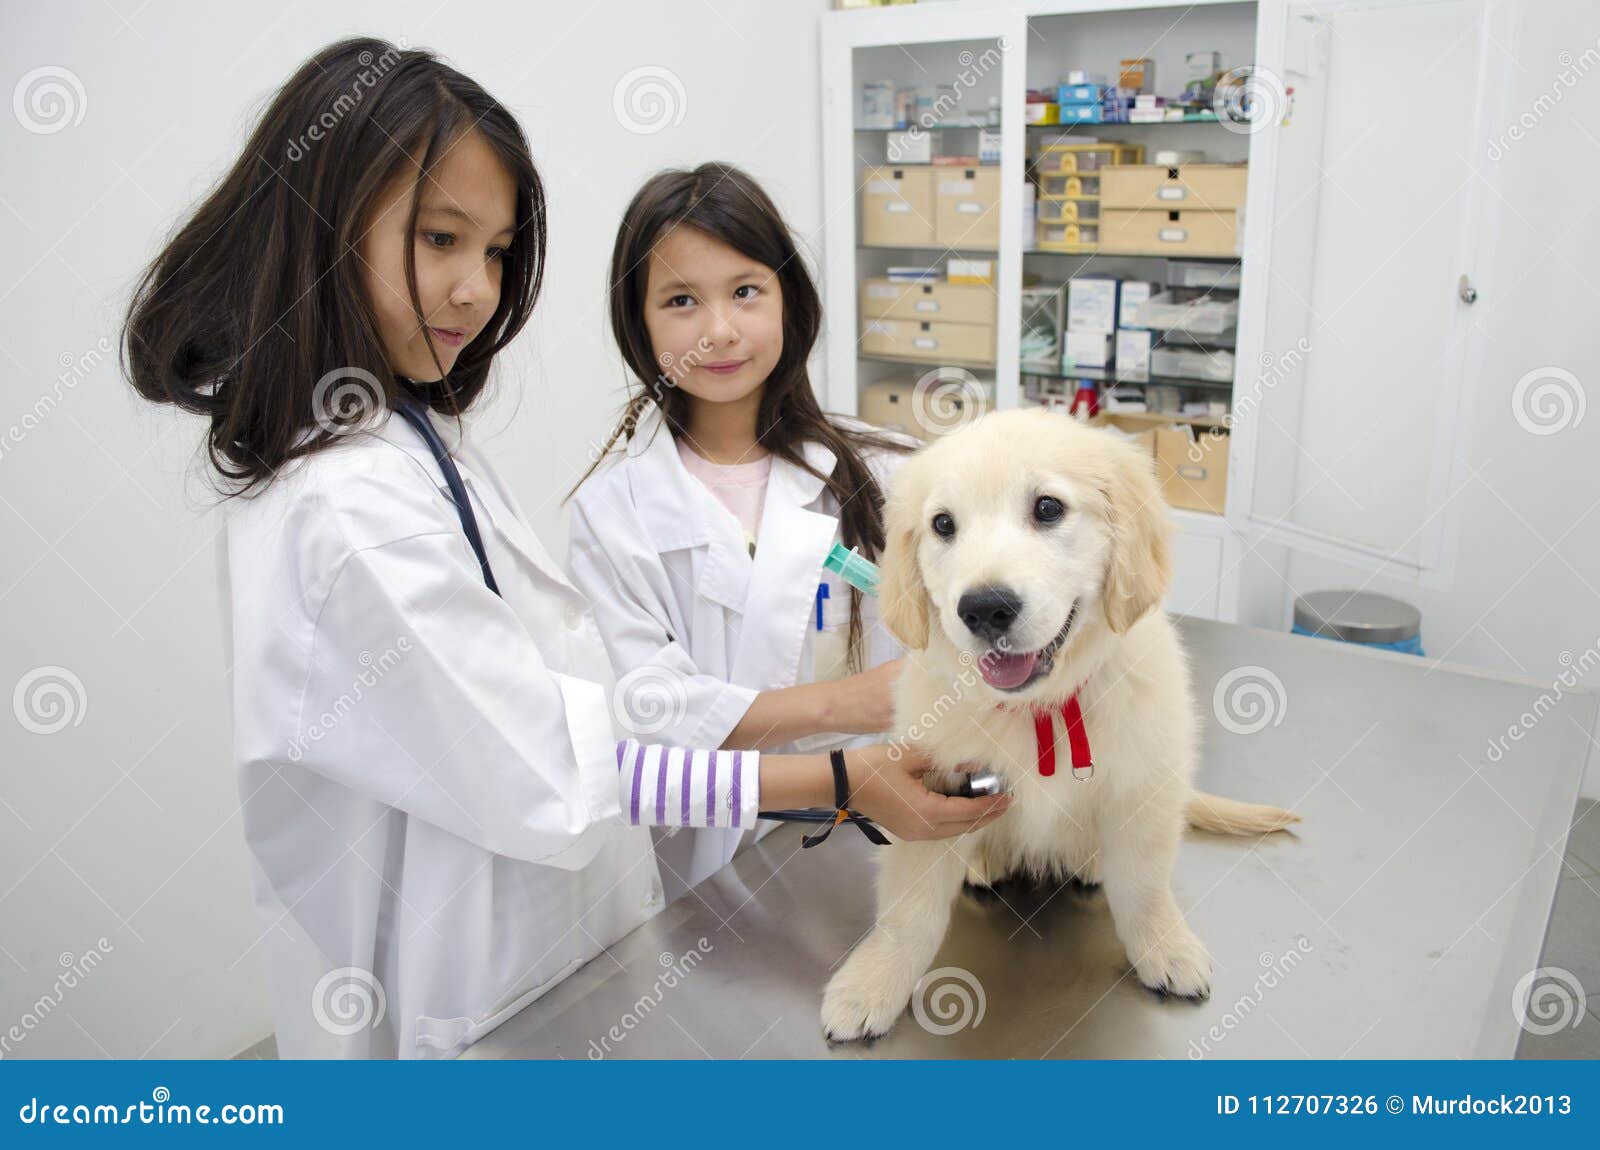 pretty girls pretending to be veterinarians.